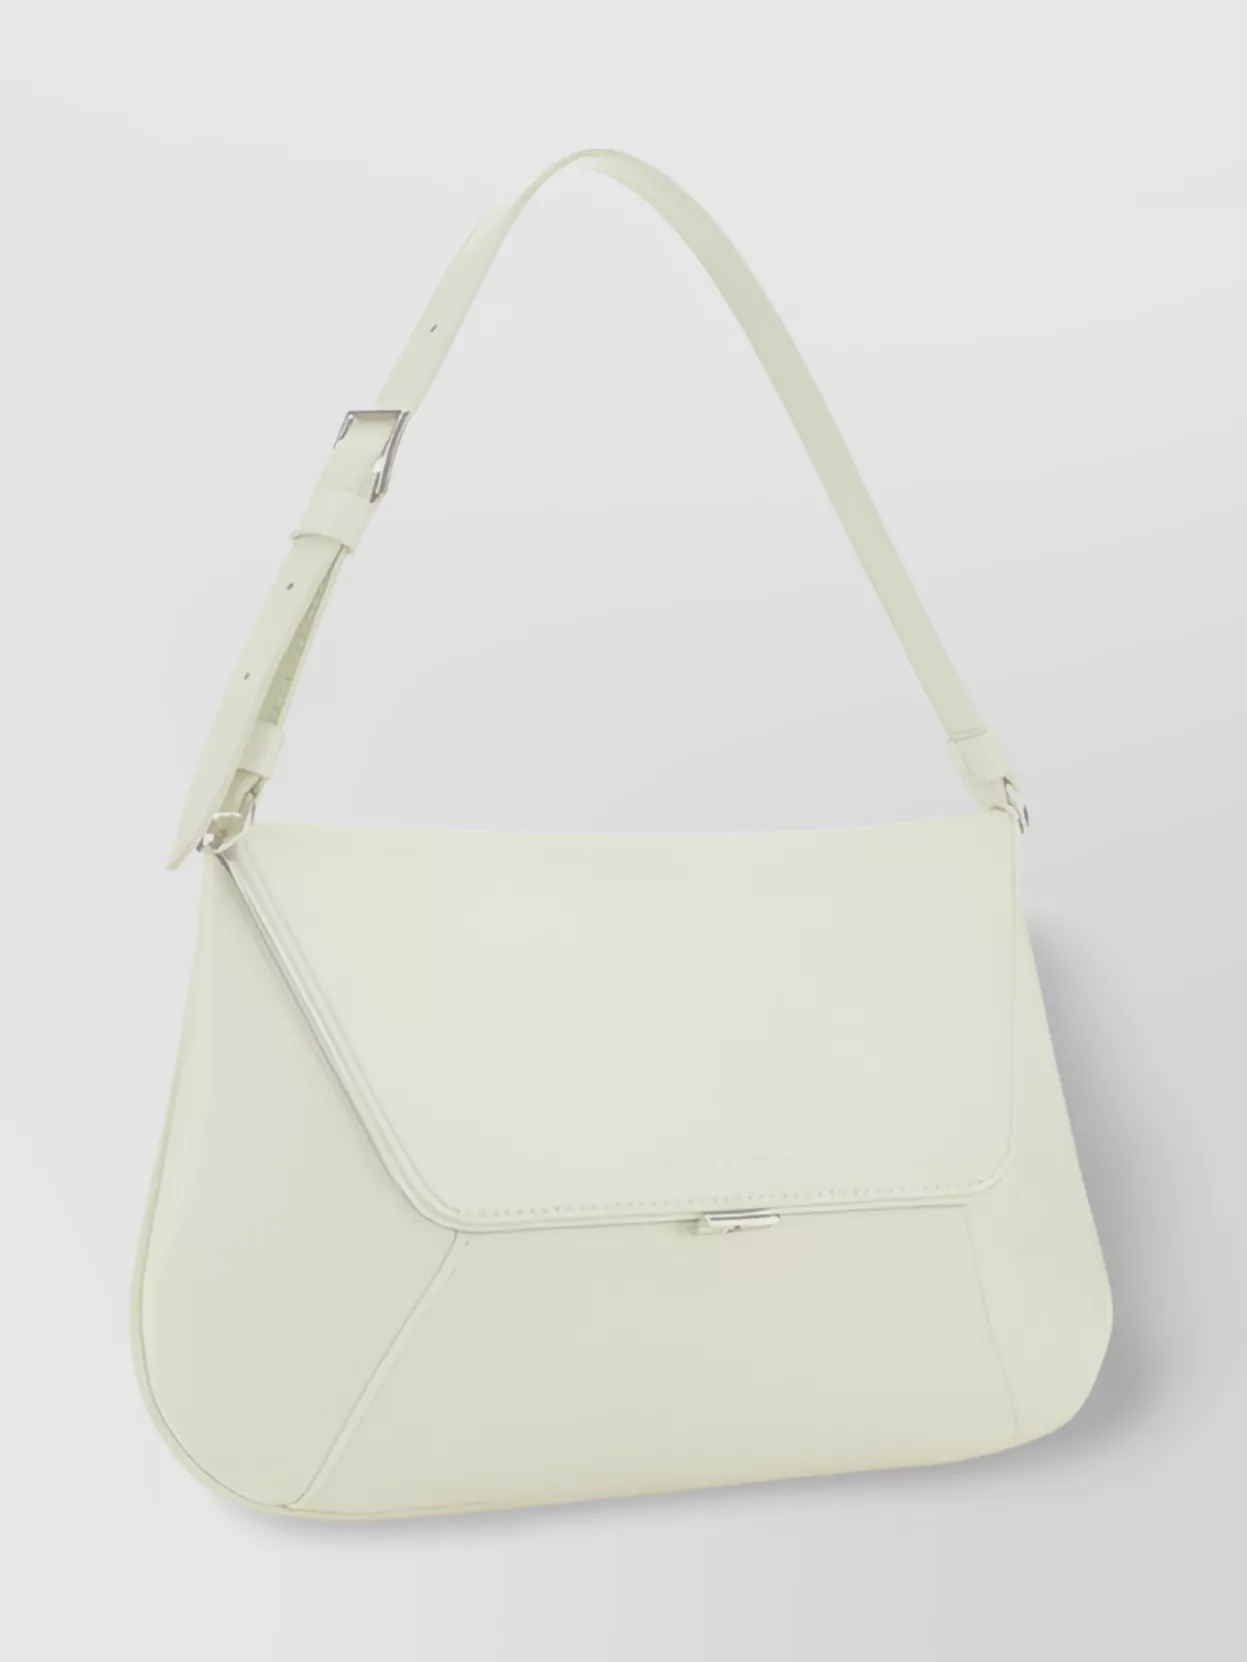 Amina Muaddi Geometric Design Calfskin Shoulder Bag In Neutral